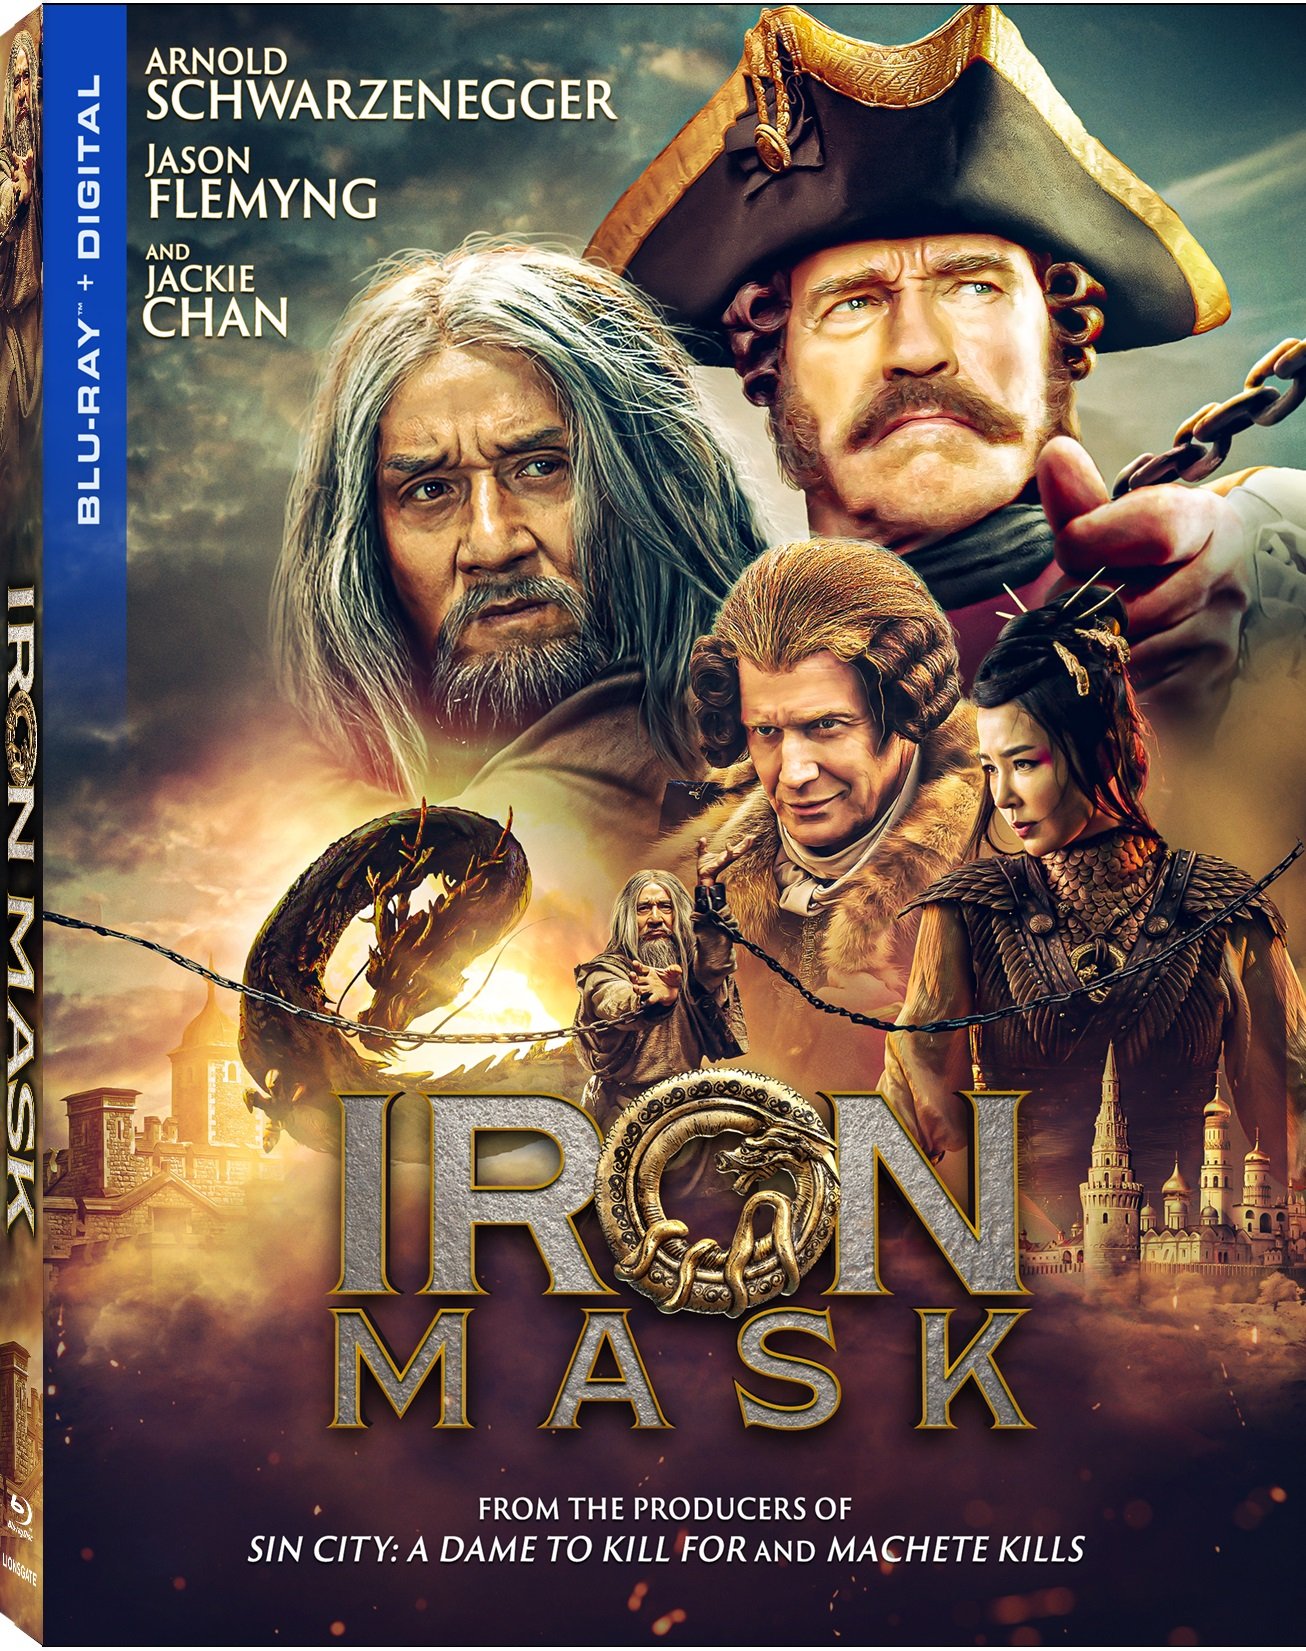 Iron Mask Blu-ray